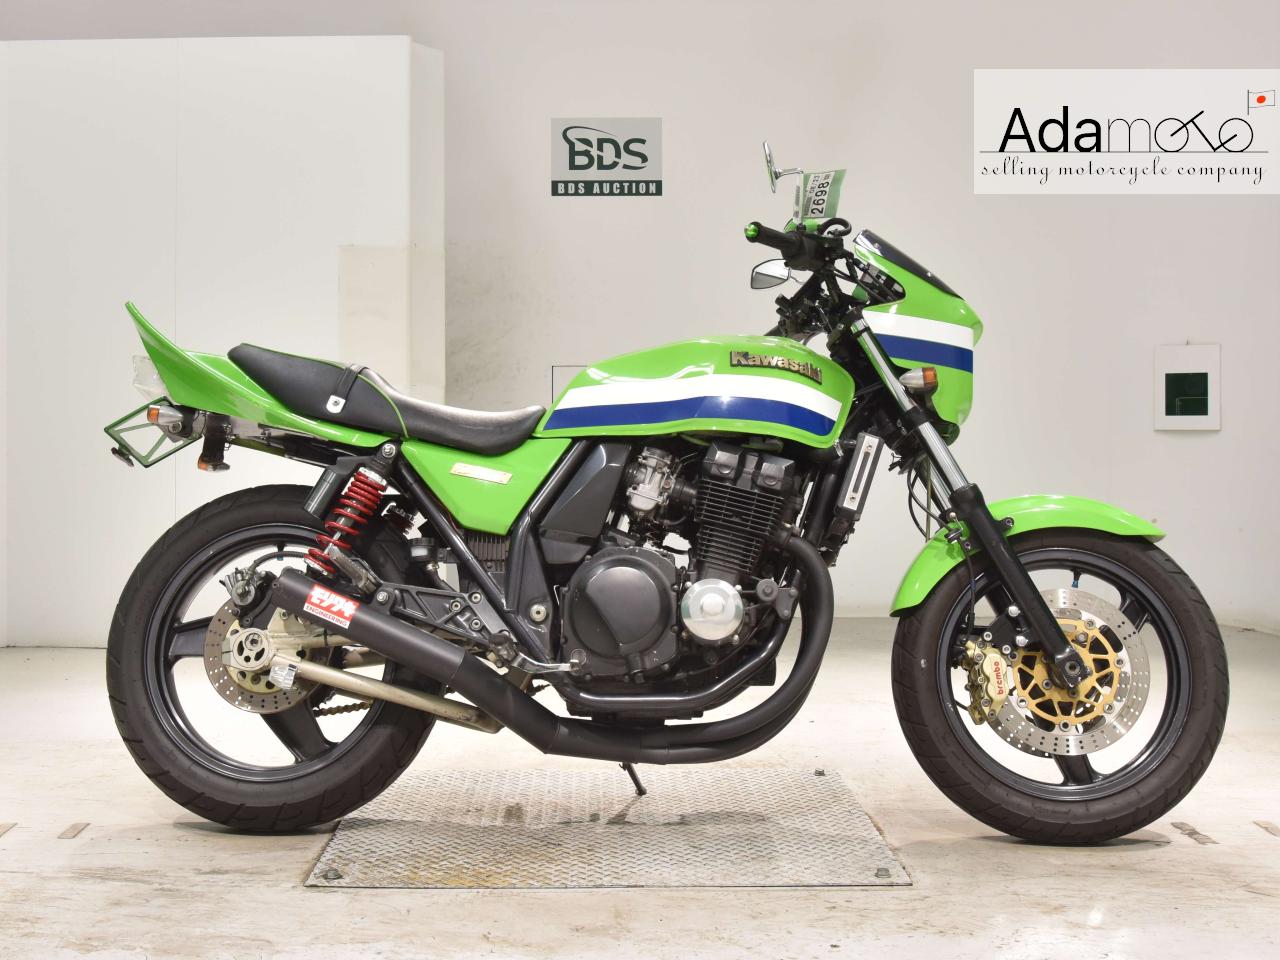 Kawasaki ZRX400 - Adamoto - Motorcycles from Japan